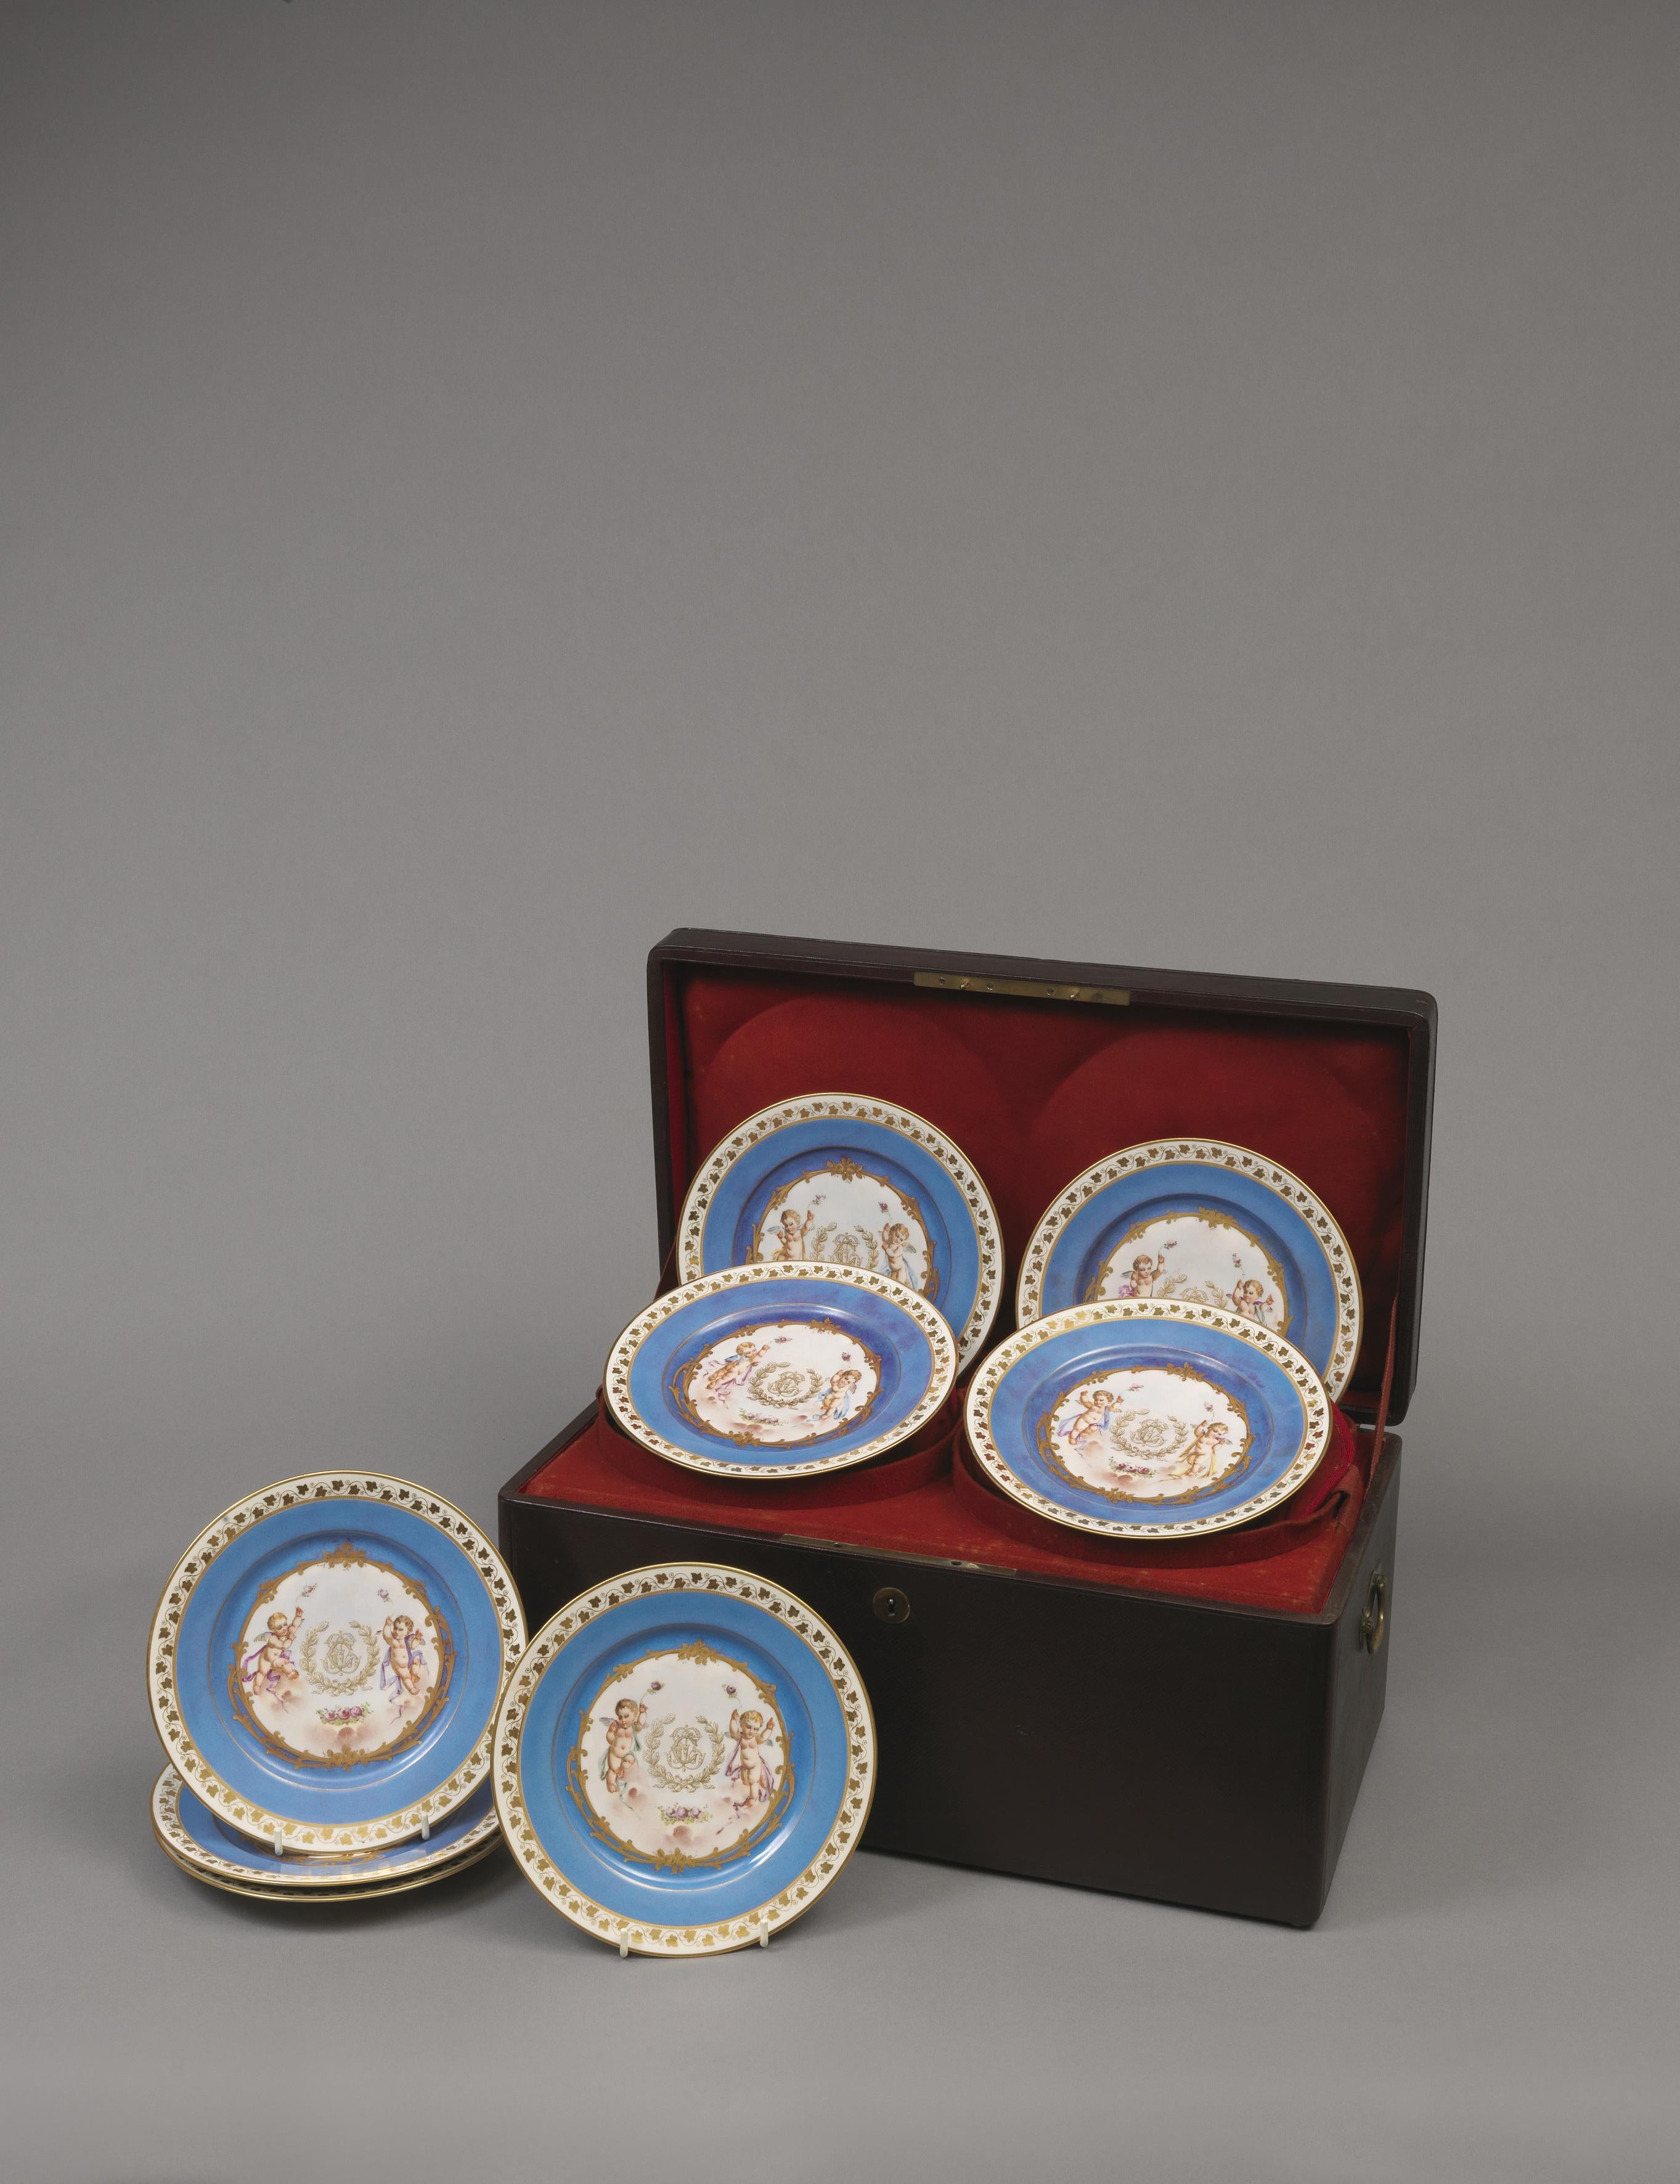 Ein seltener und dekorativer Satz von zwölf azurblauen Sèvres-Tellern in der originalen Ledertasche.

Frankreich, um 1840. 

Jeder Teller mit Sèvres-Marke auf der Rückseite und Château des Tuileries.

Dieses seltene Set von Sèvres-Tellern hat